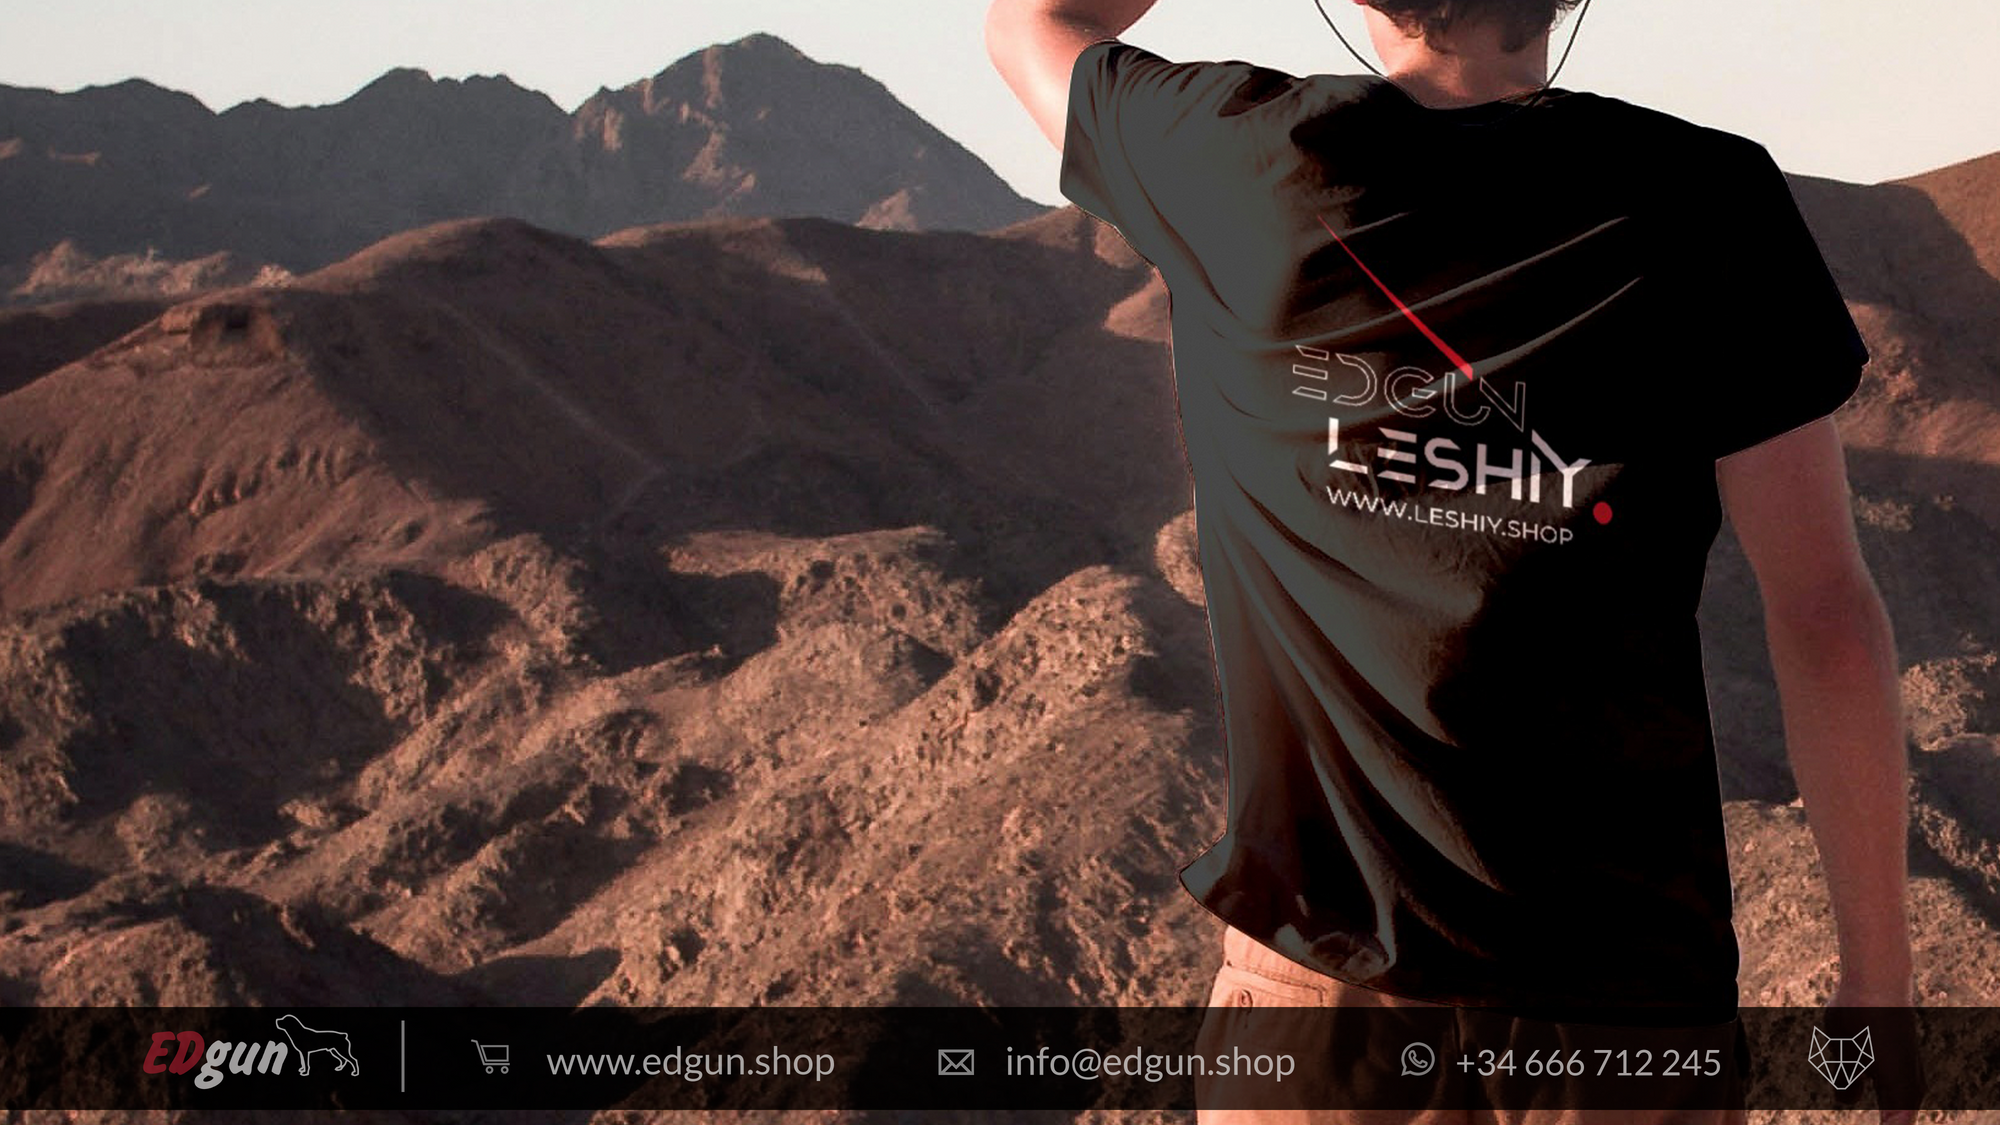 EDgun Leshiy Shop Exclusive T-Shirt